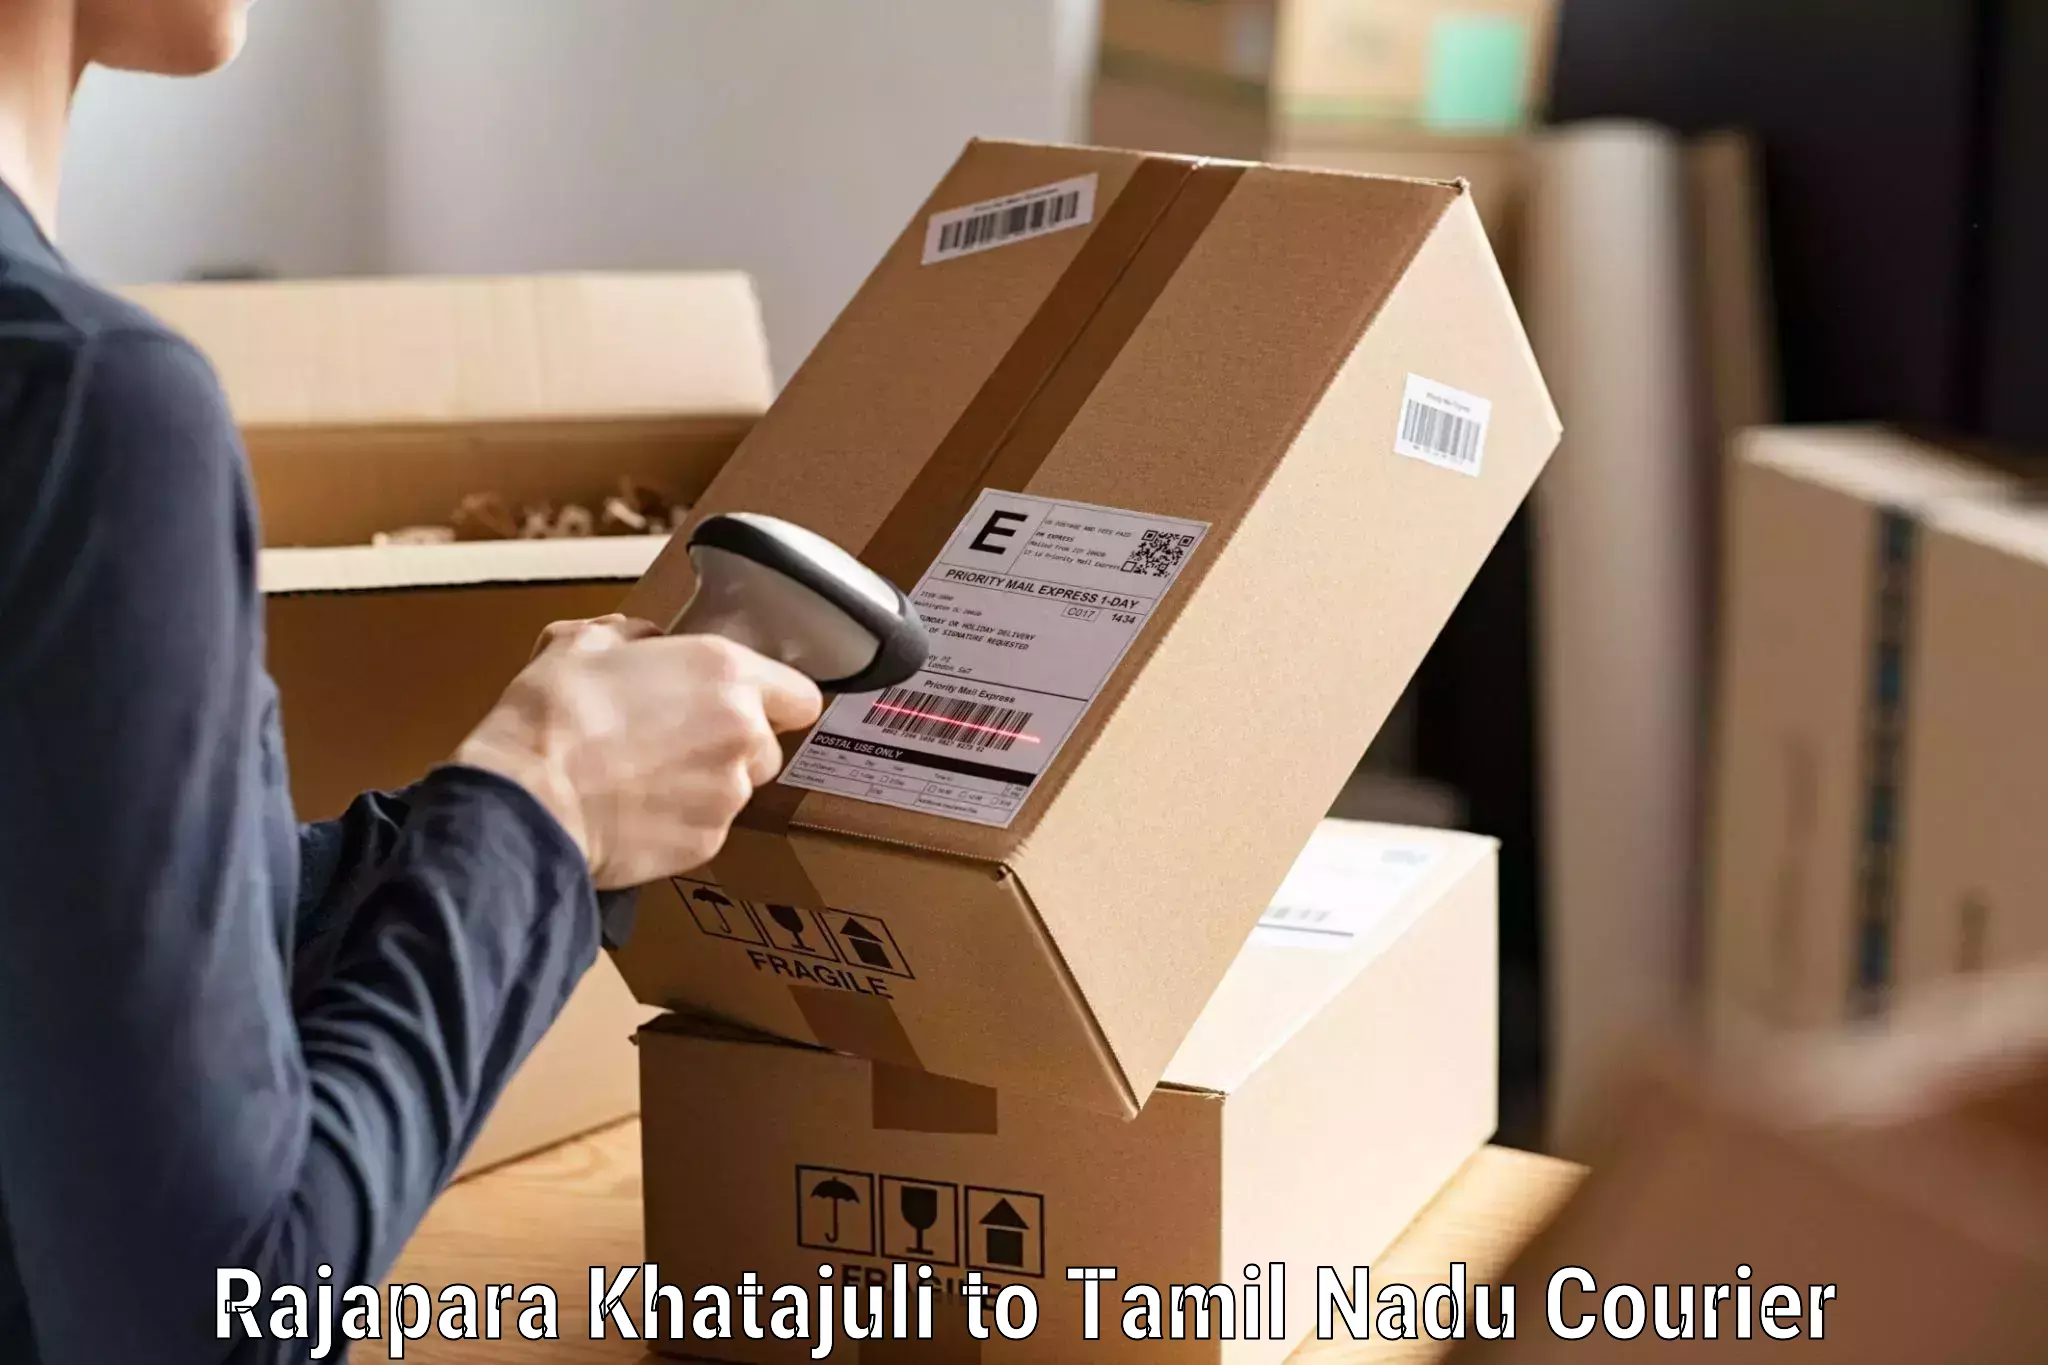 Efficient parcel delivery Rajapara Khatajuli to Tamil Nadu